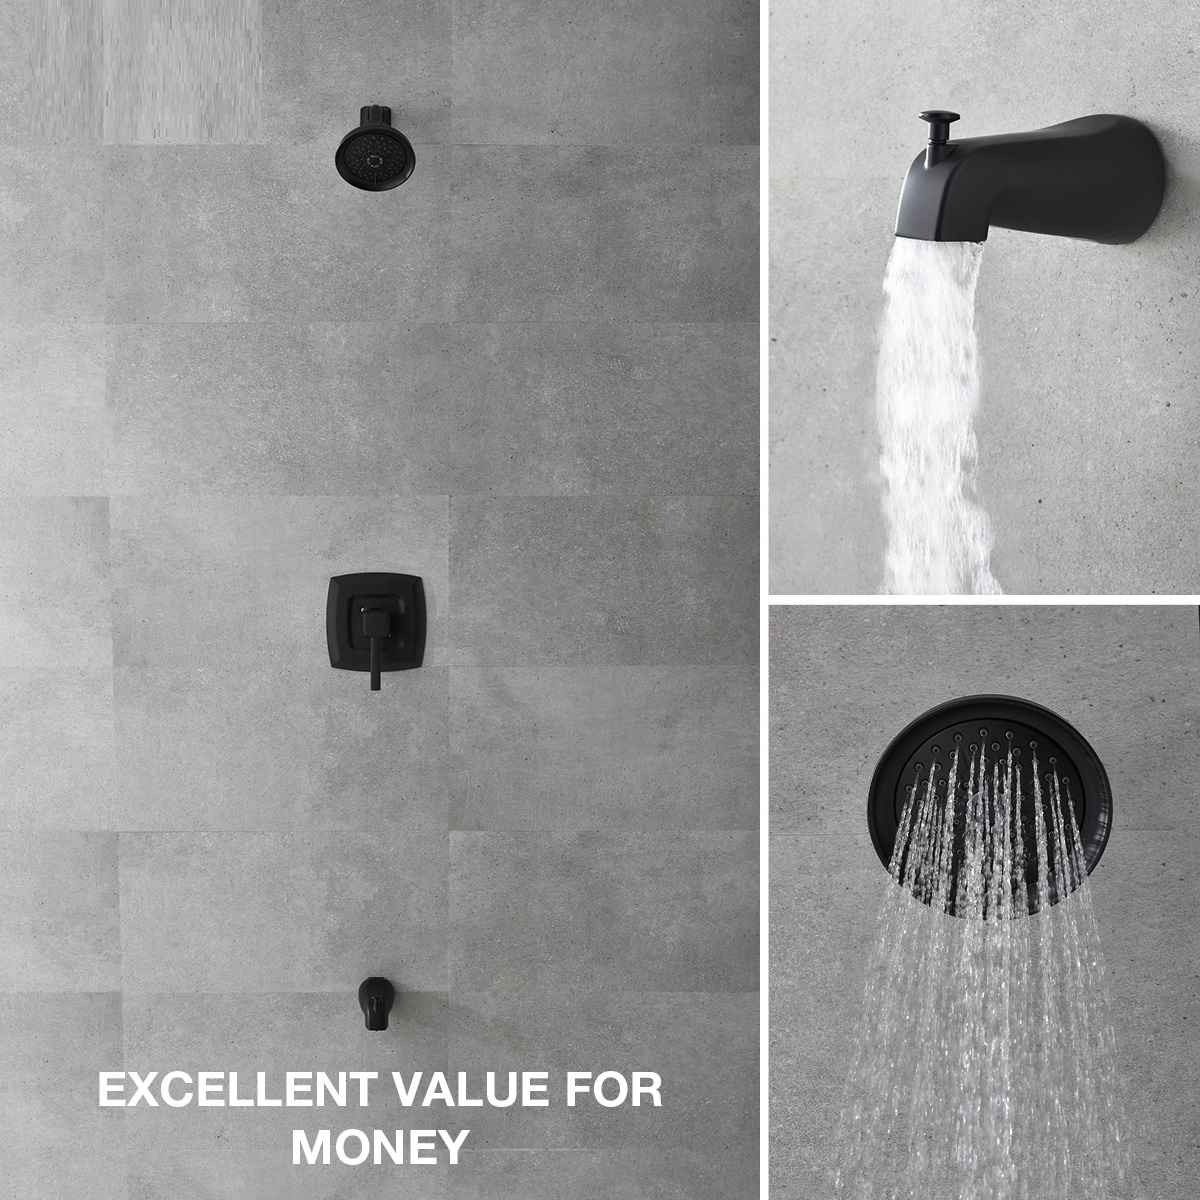 Favorável Durável Preto Clássico Moderno Banheiro 5 Maneiras Torneira Banheira de Chuveiro Conjunto de Banho e Chuveiro